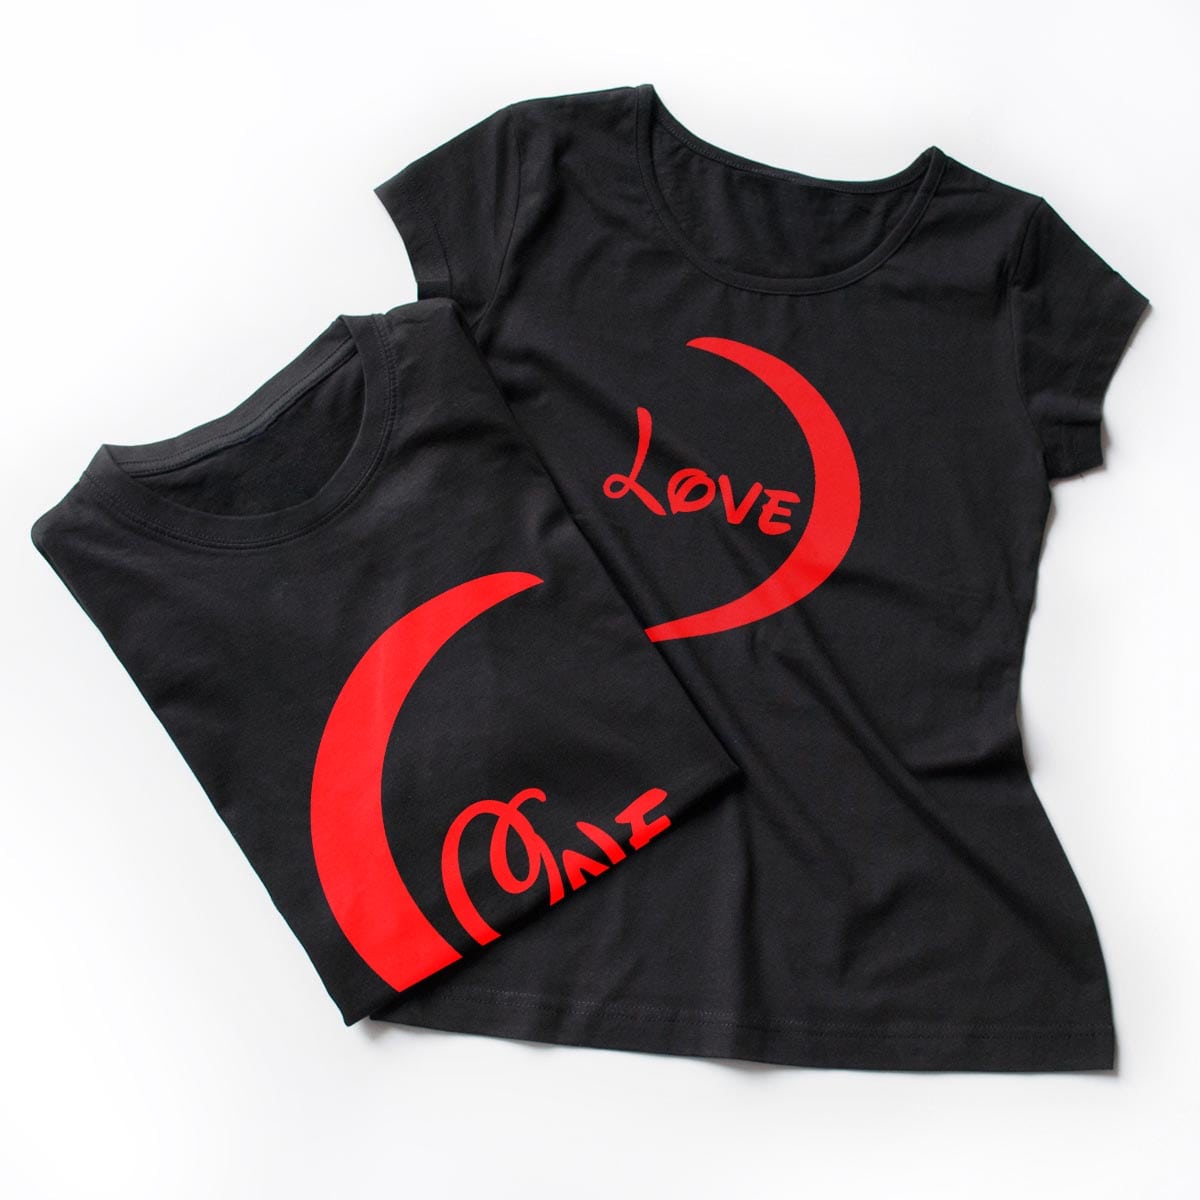 Tricouri cupluri 2 Hearts , detaliu personalizare tricouri negre